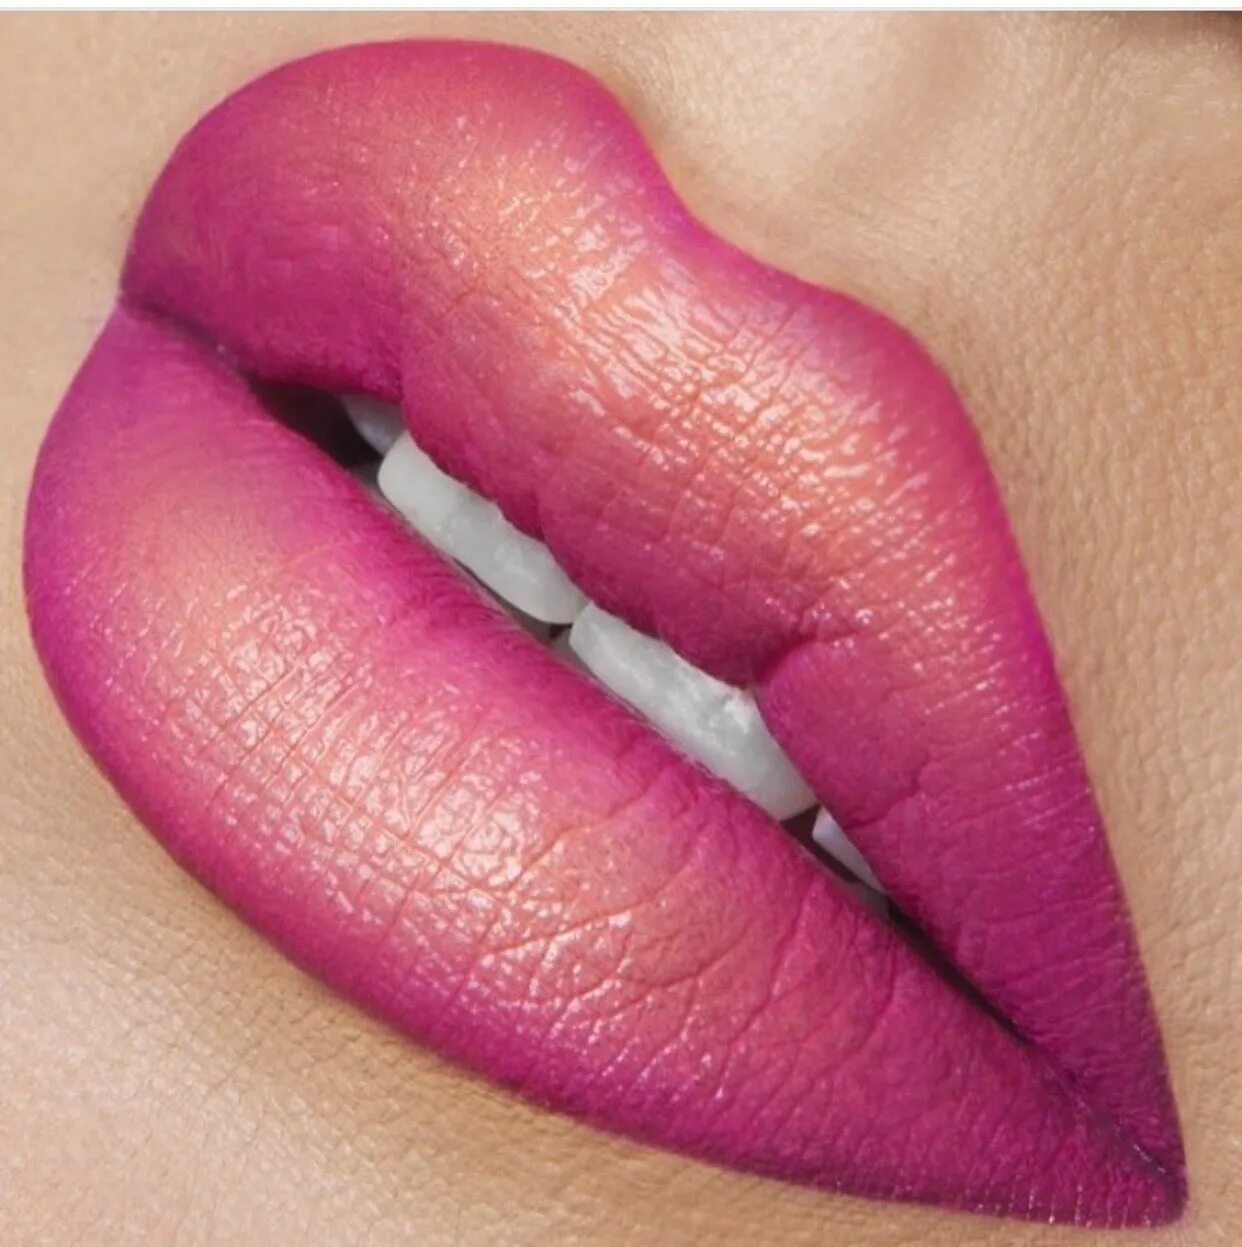 Макияж губ помада. Макияж губ. Накрашенные губы. Красивые губы с помадой. Красивый макияж губ.